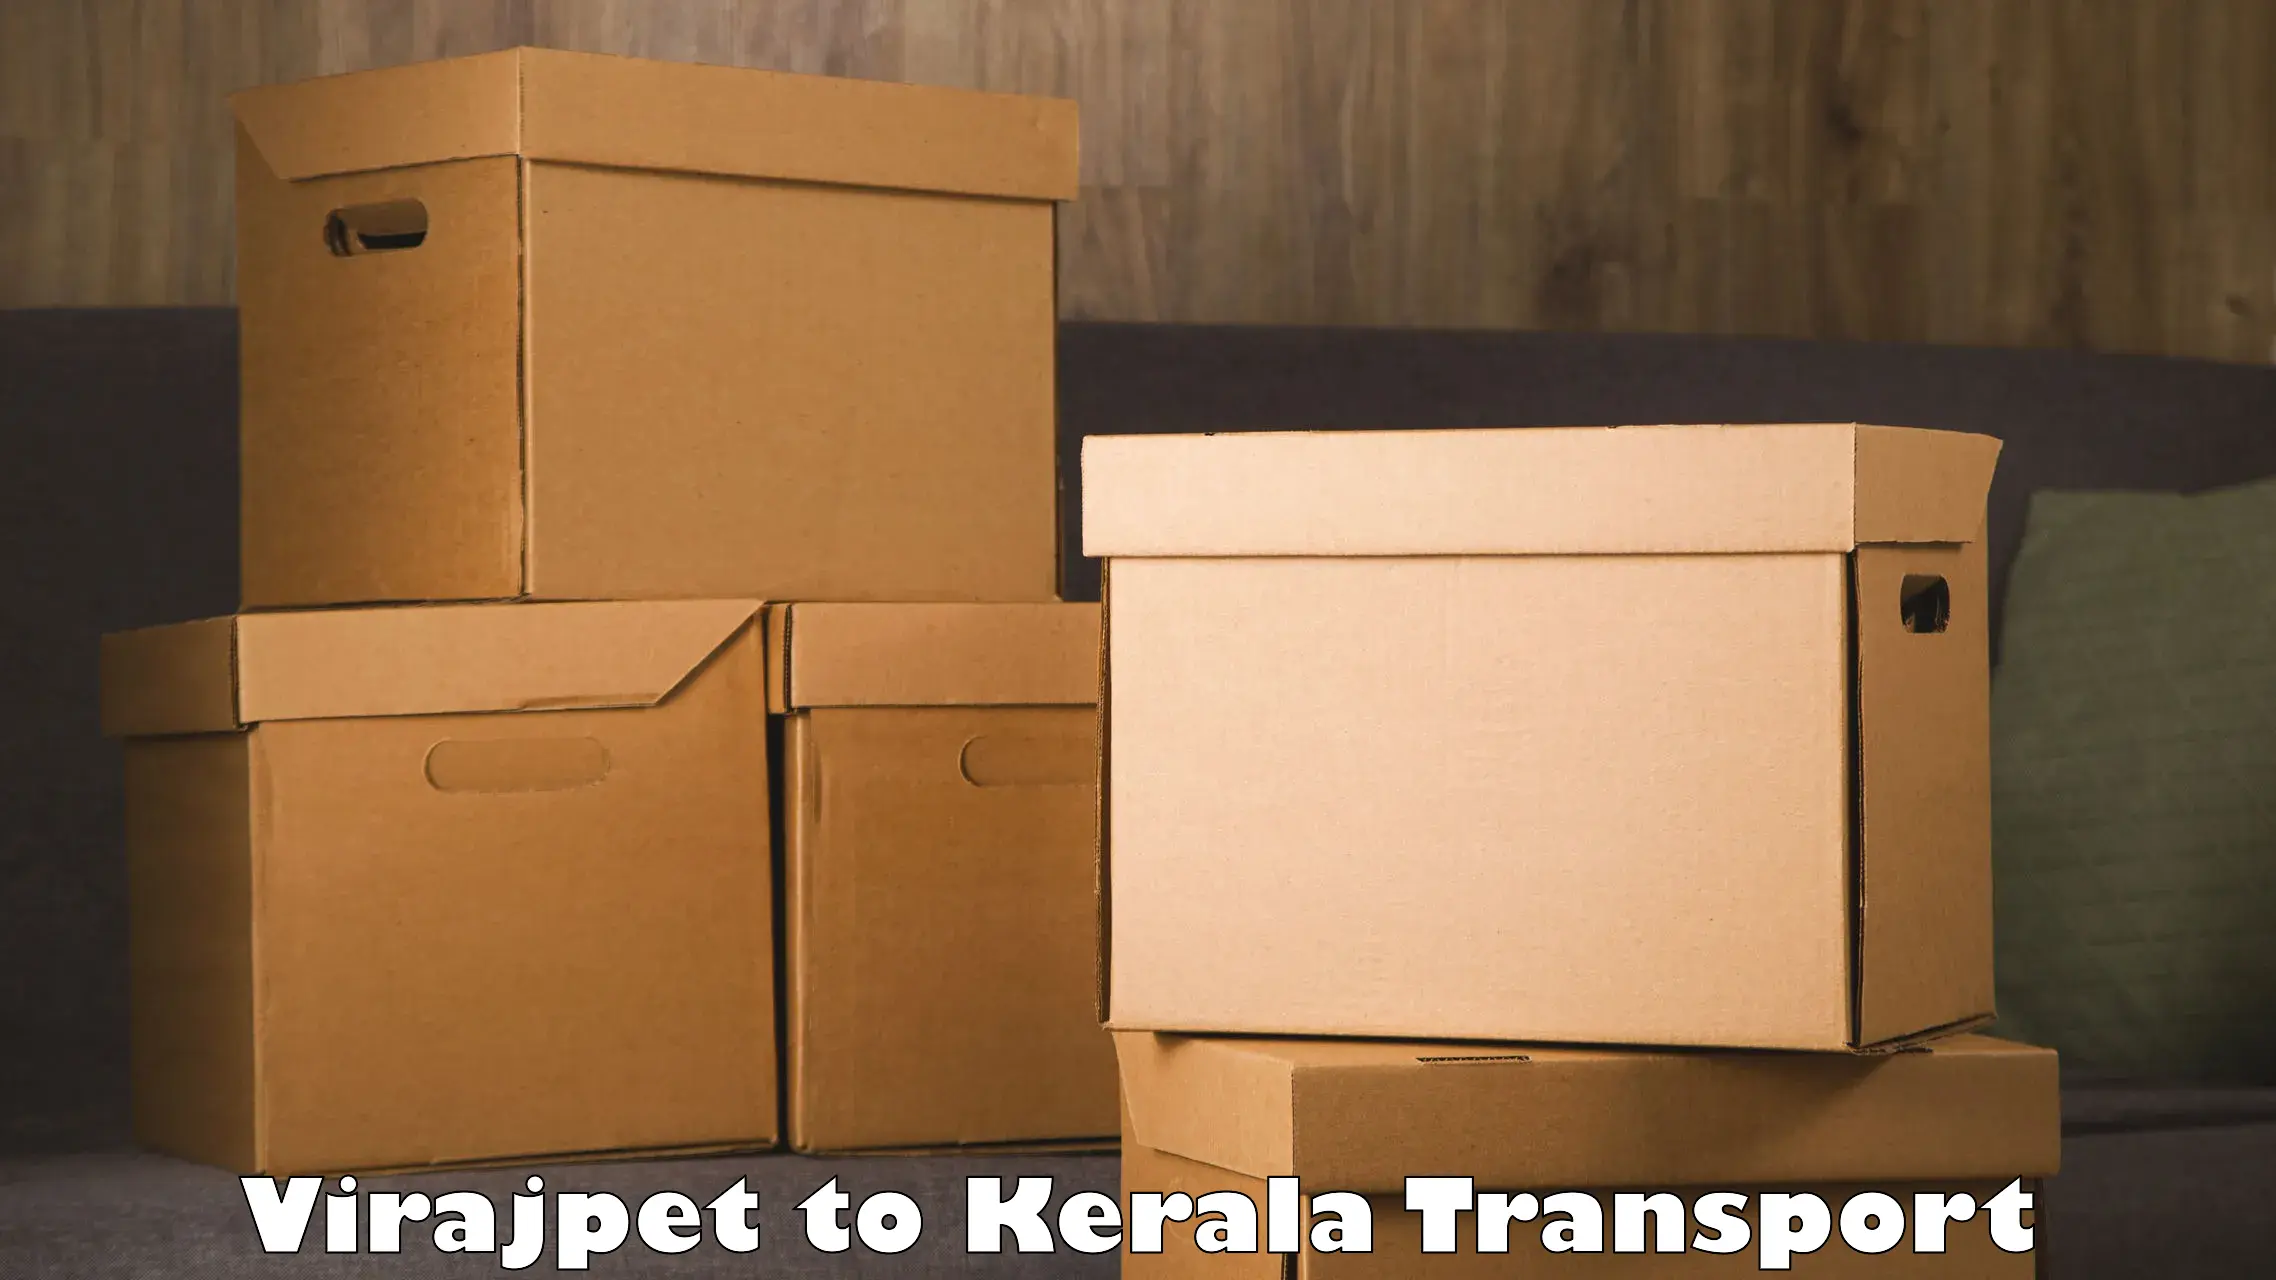 Pick up transport service Virajpet to Mundakayam